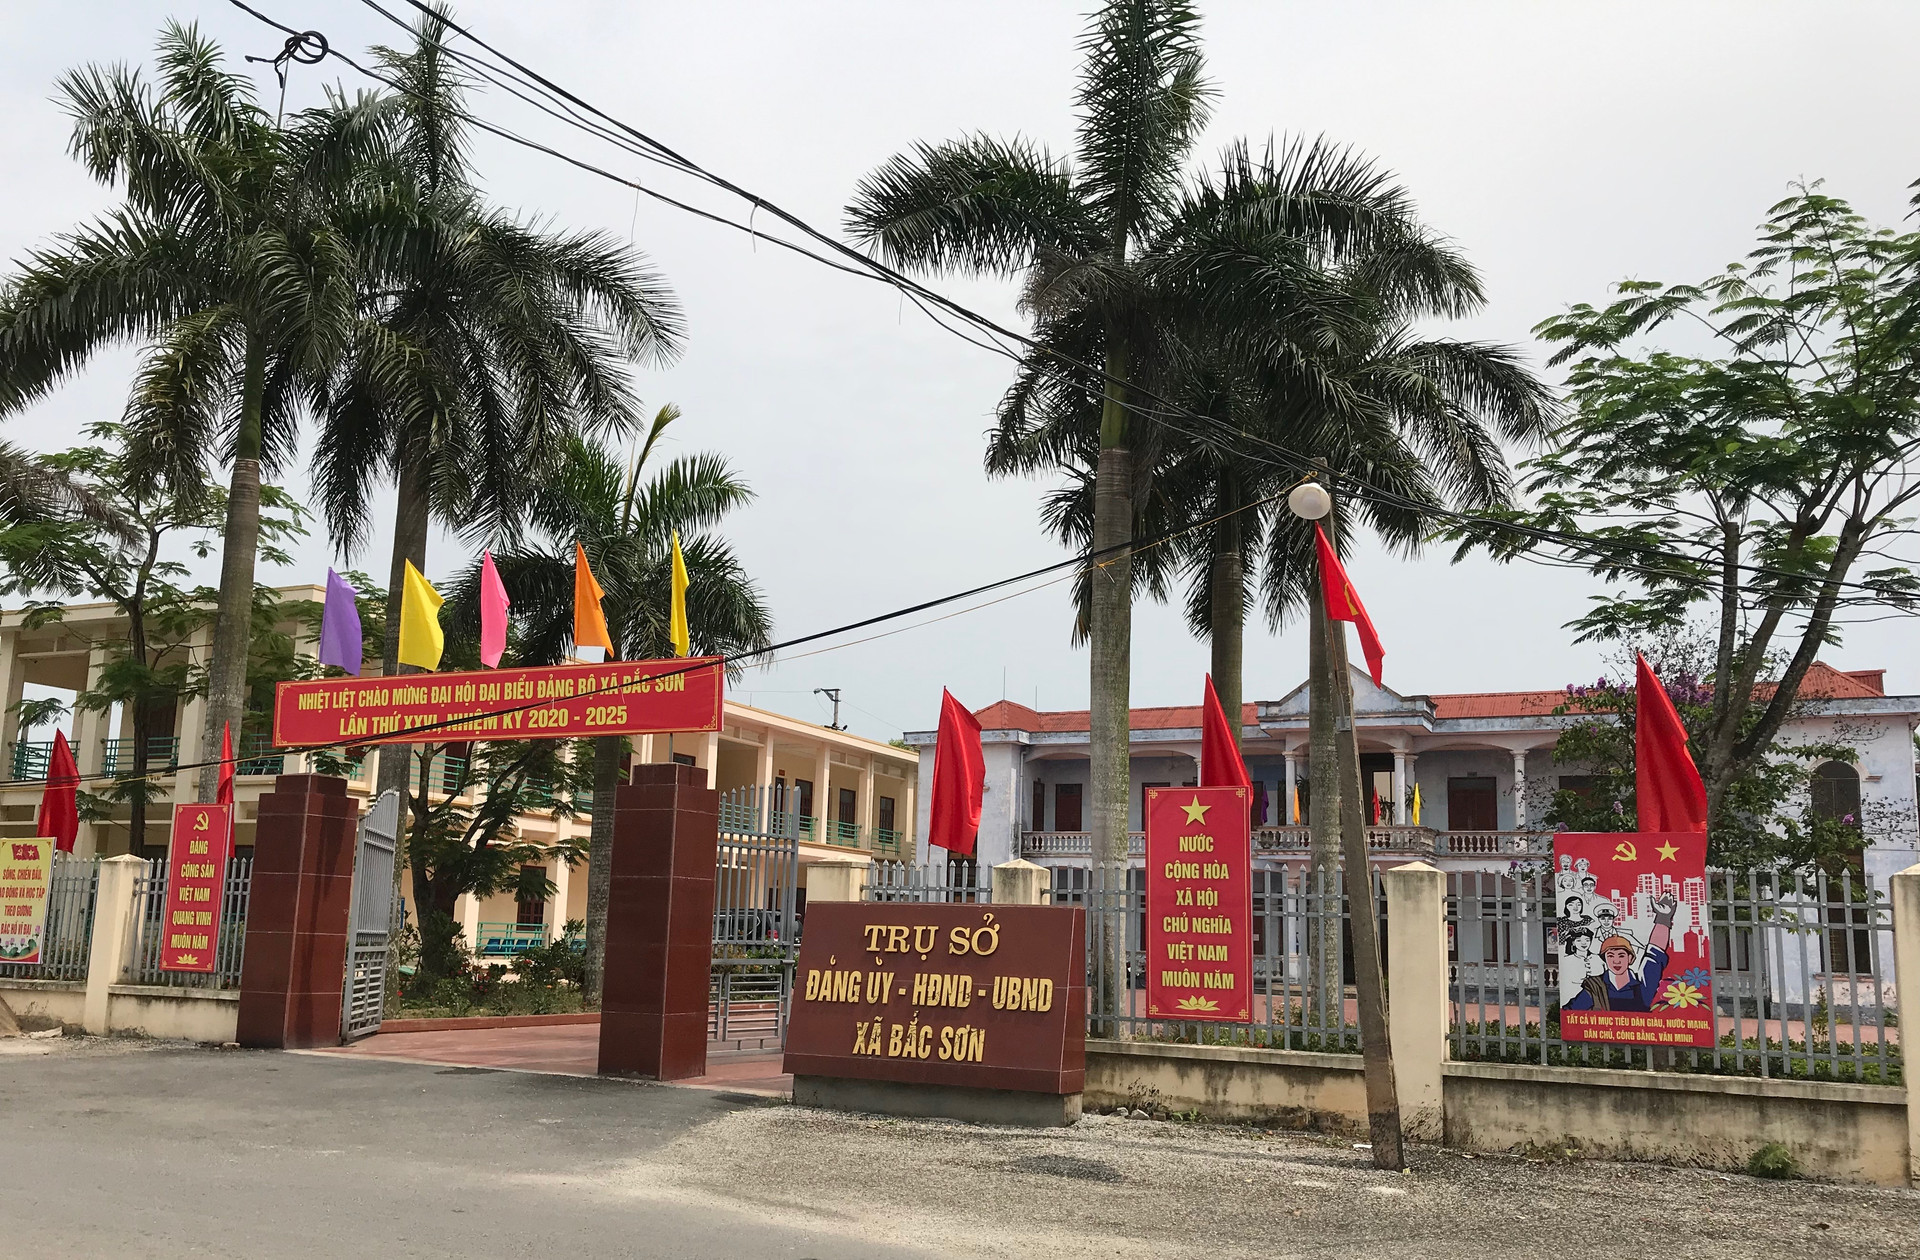 Xã Bắc Sơn, huyện An Dương, Hải Phòng: Người dân phản ánh về nhân sự cấp ủy không đủ tiêu chuẩn